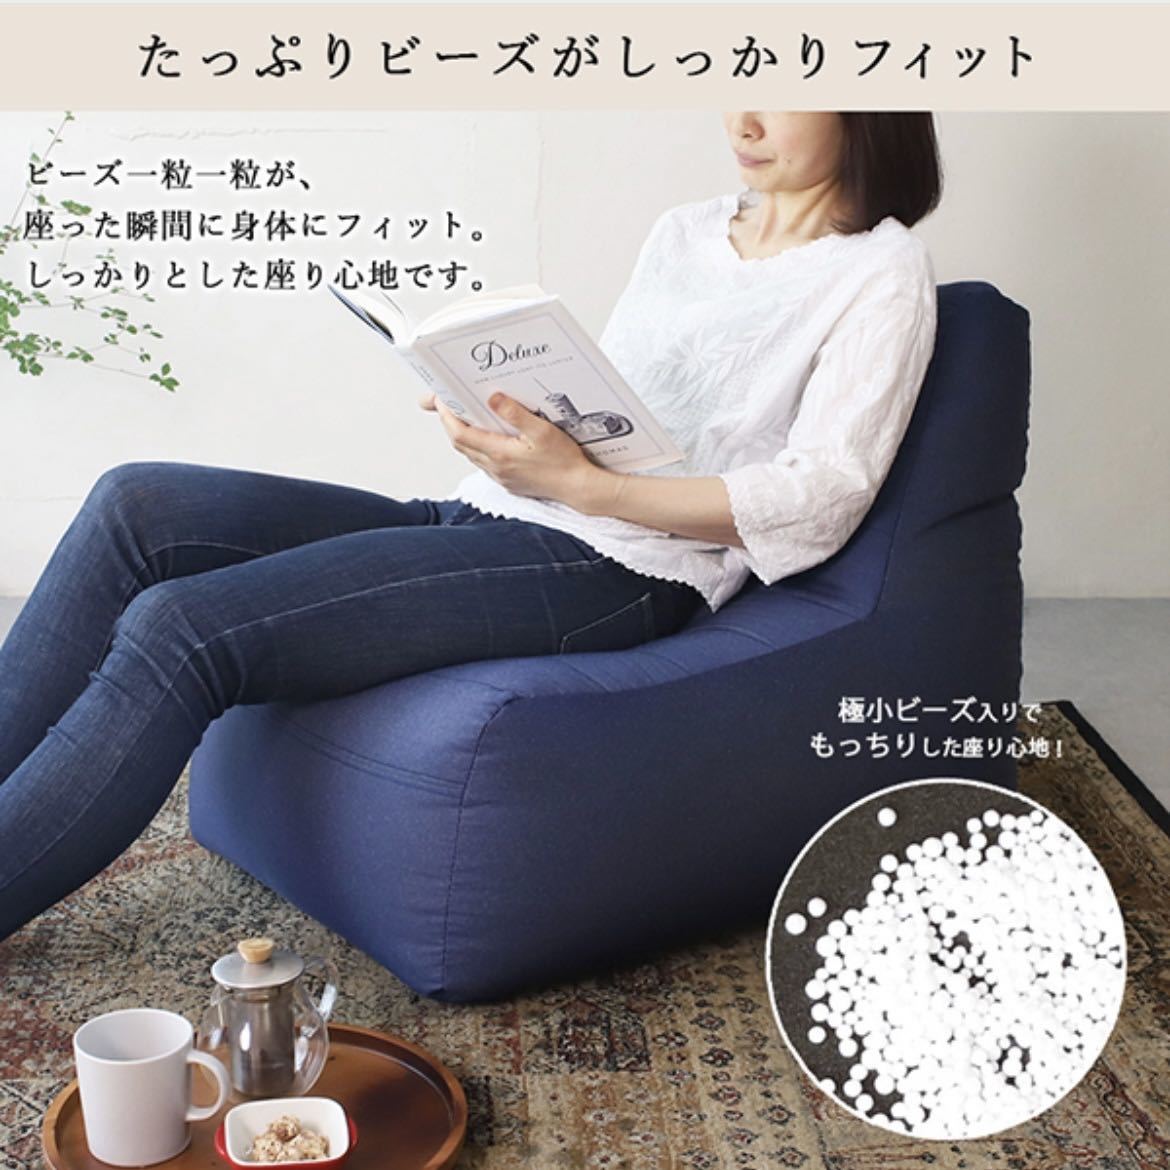  новый товар бисер подушка кресло-мешок Denim Северная Европа пол сделано в Японии 1 местный . чтение comp человек .... делать домашнее животное. ребенок одиночный низкий диван 